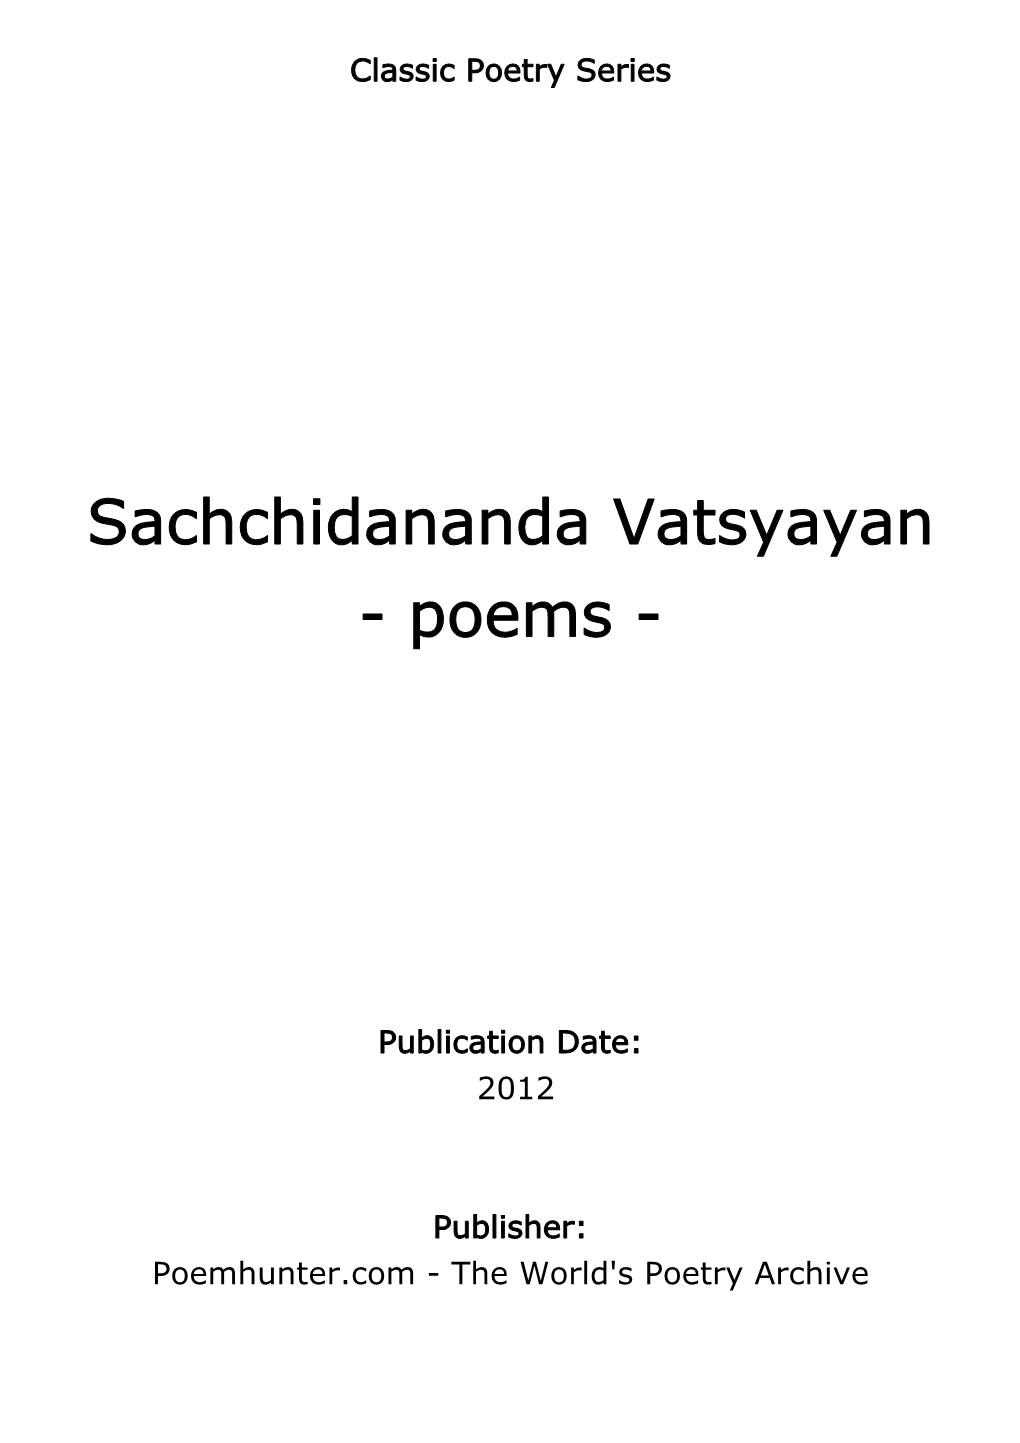 Sachchidananda Vatsyayan - Poems